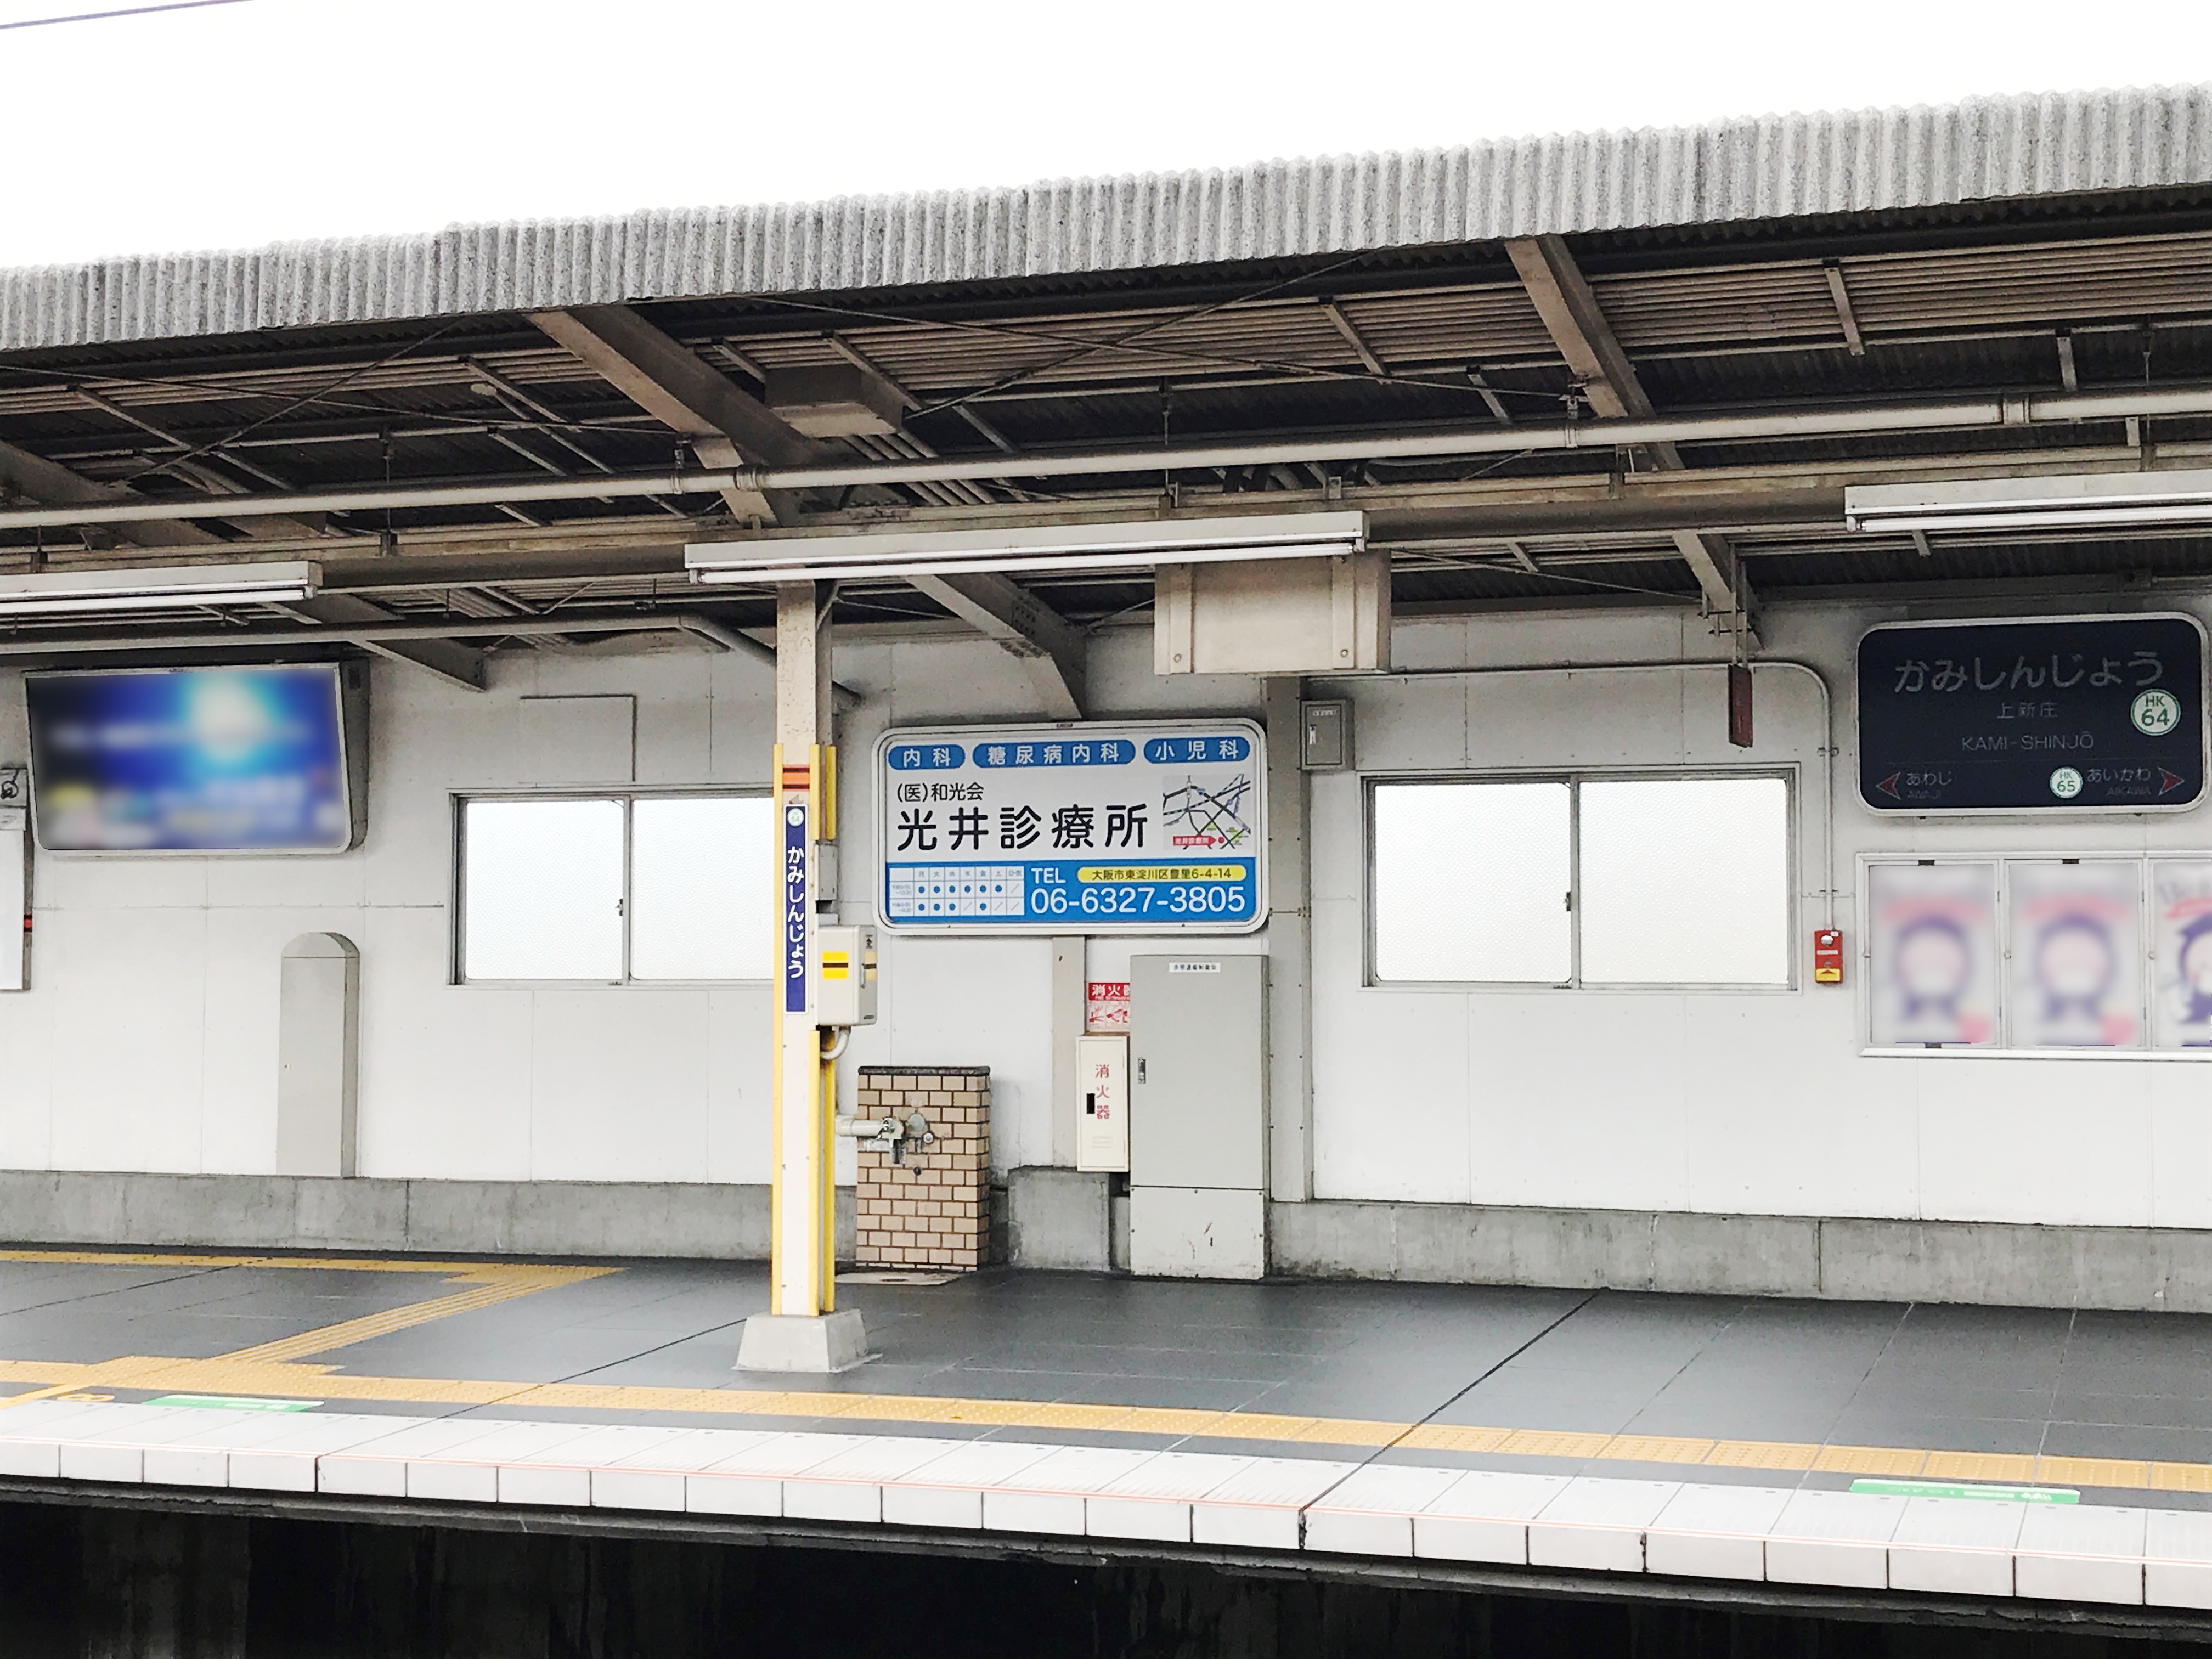 阪急 上新庄駅 駅看板